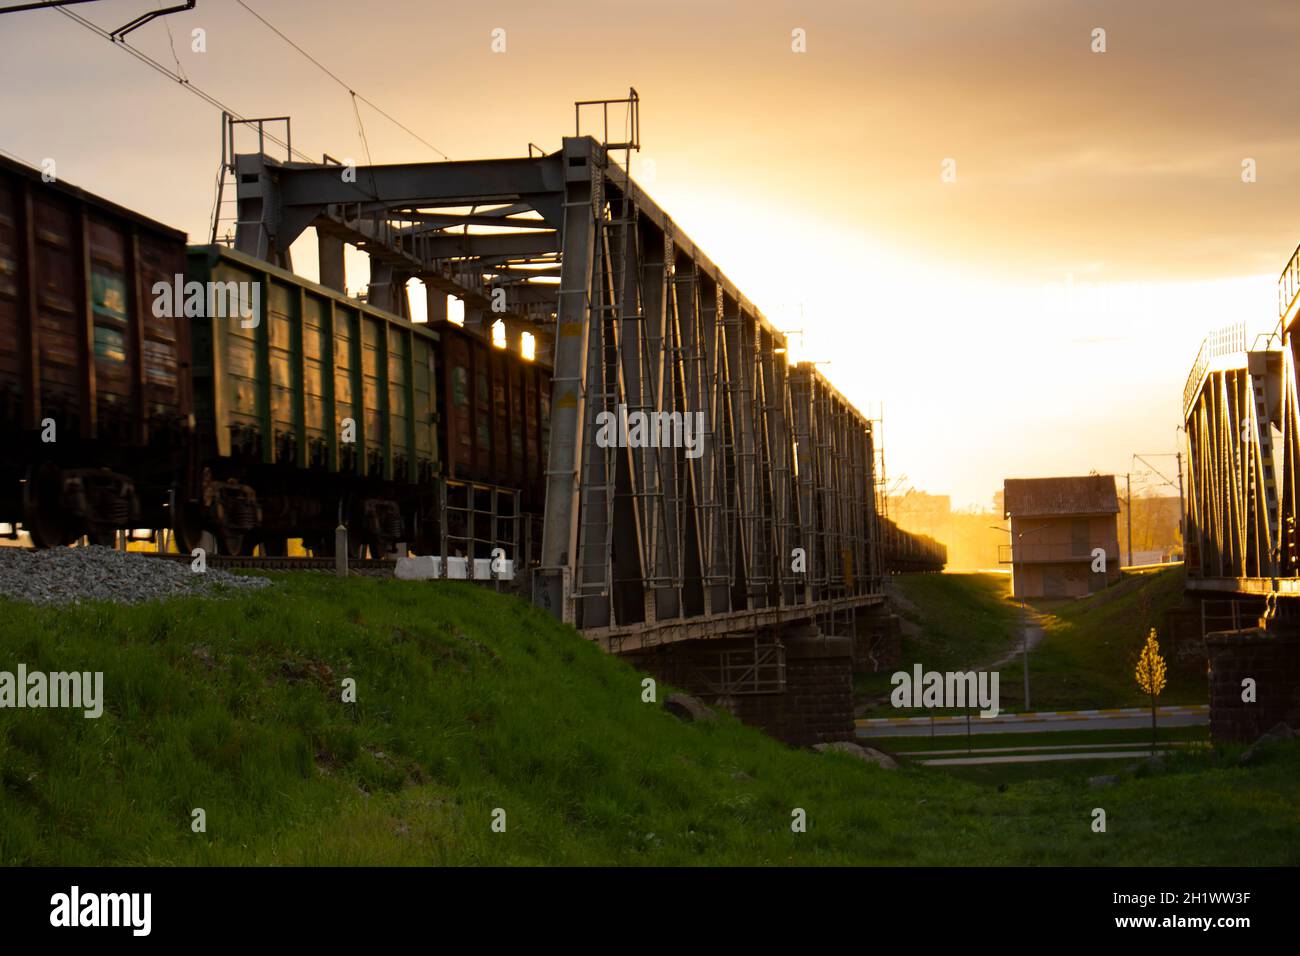 Selektiver Fokus. Güterwagen auf einer Eisenbahnbrücke, die von einem Zug gezogen wird. Abendsonne und die Reflexion des orangen Abendlichts aus der Metallstruktur Stockfoto